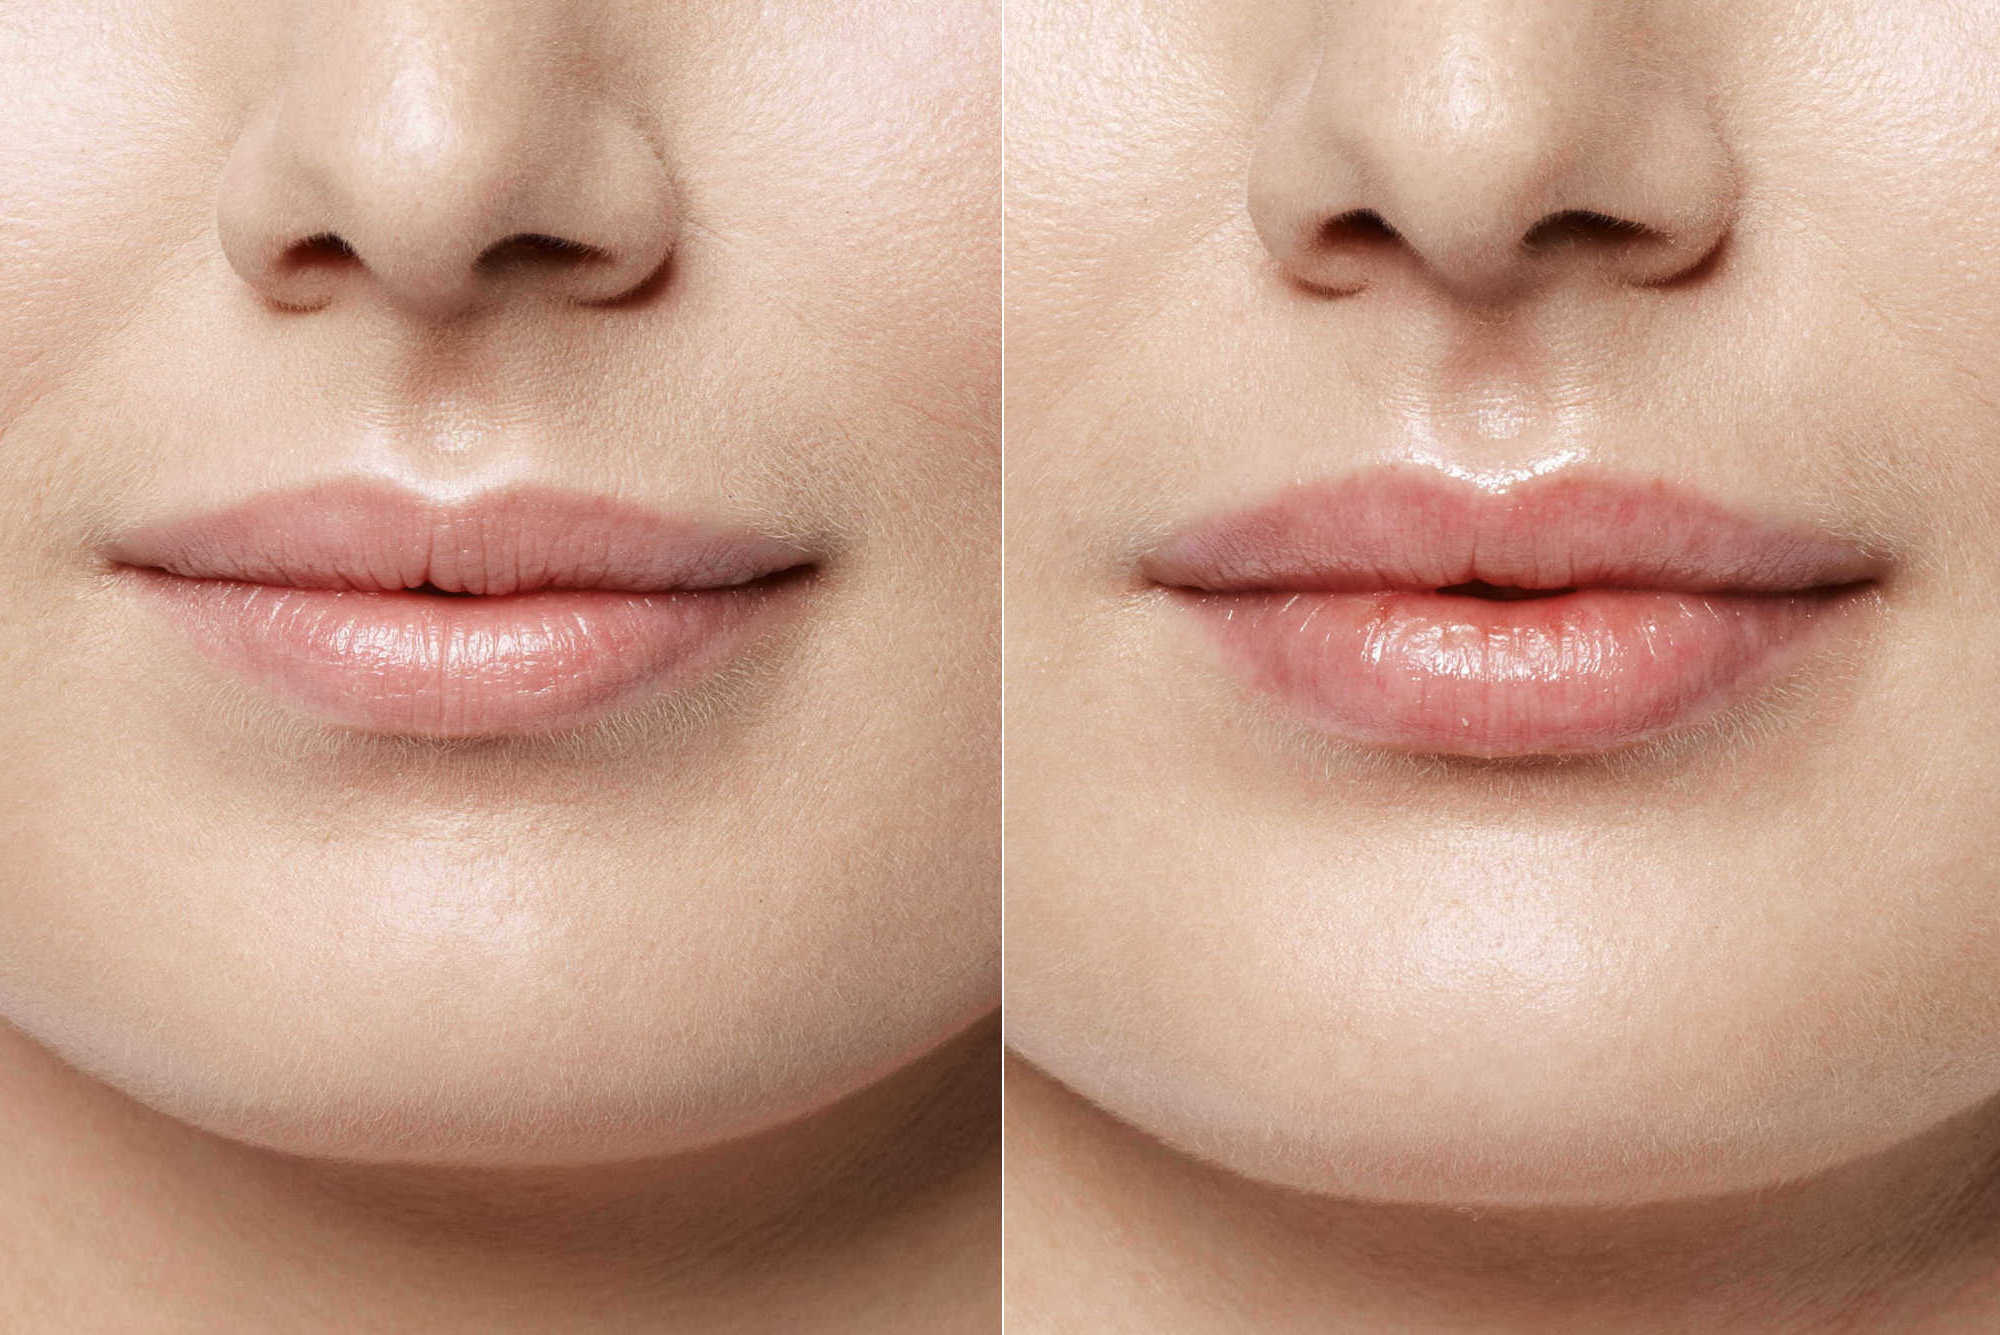 Татуаж контура губ: фото до и после, отзывы клиентов, процесс